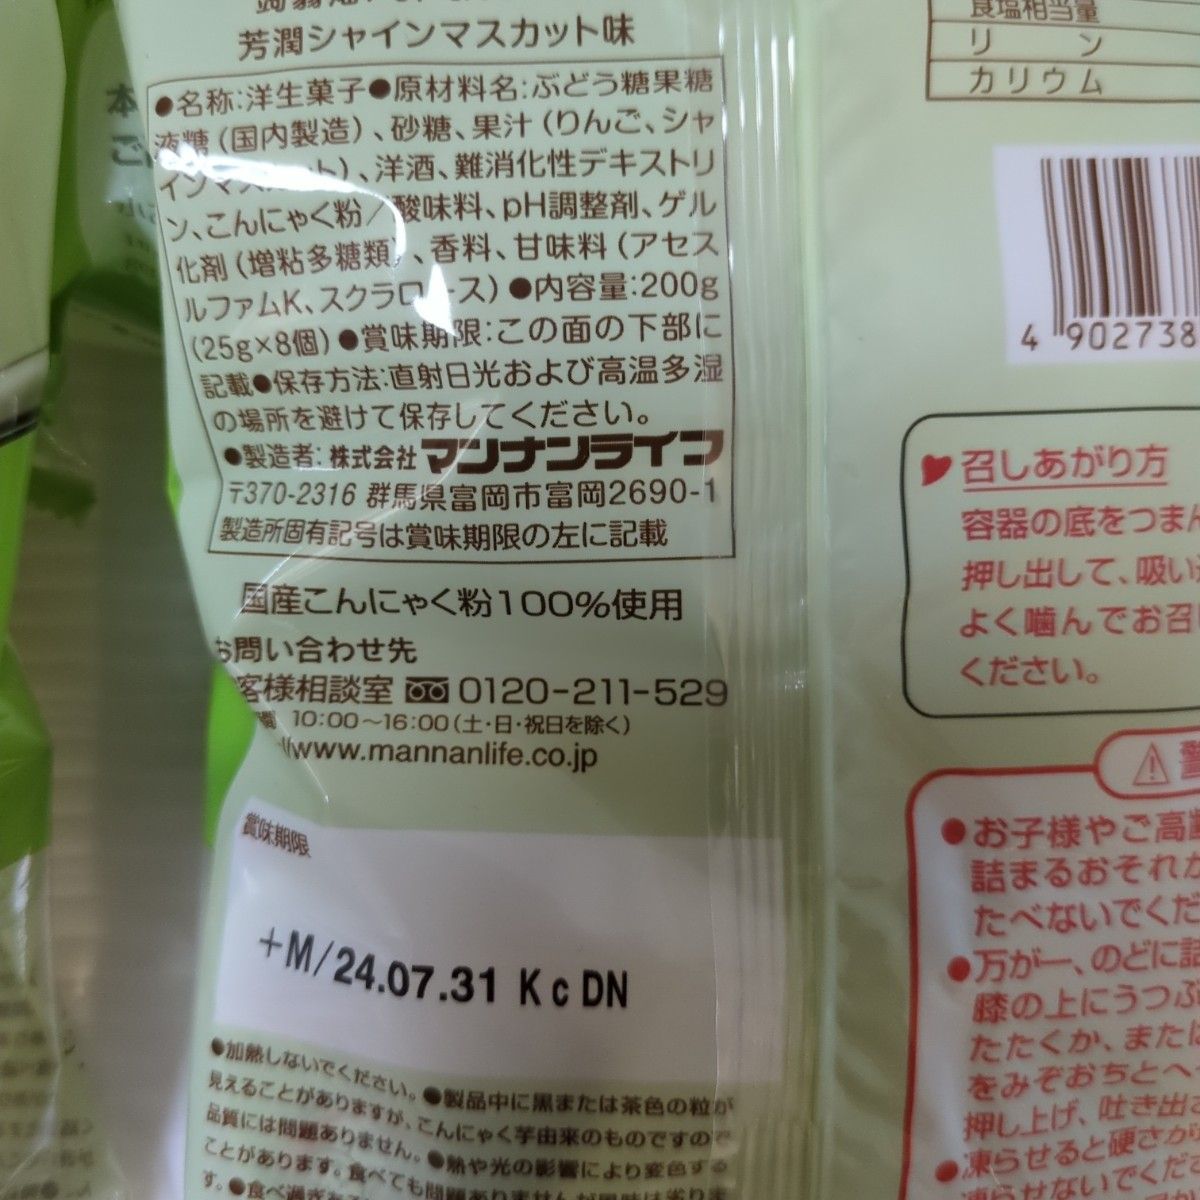 マンナンライフ 期間限定 蒟蒻畑 フォーグルメ  芳潤シャインマスカット味